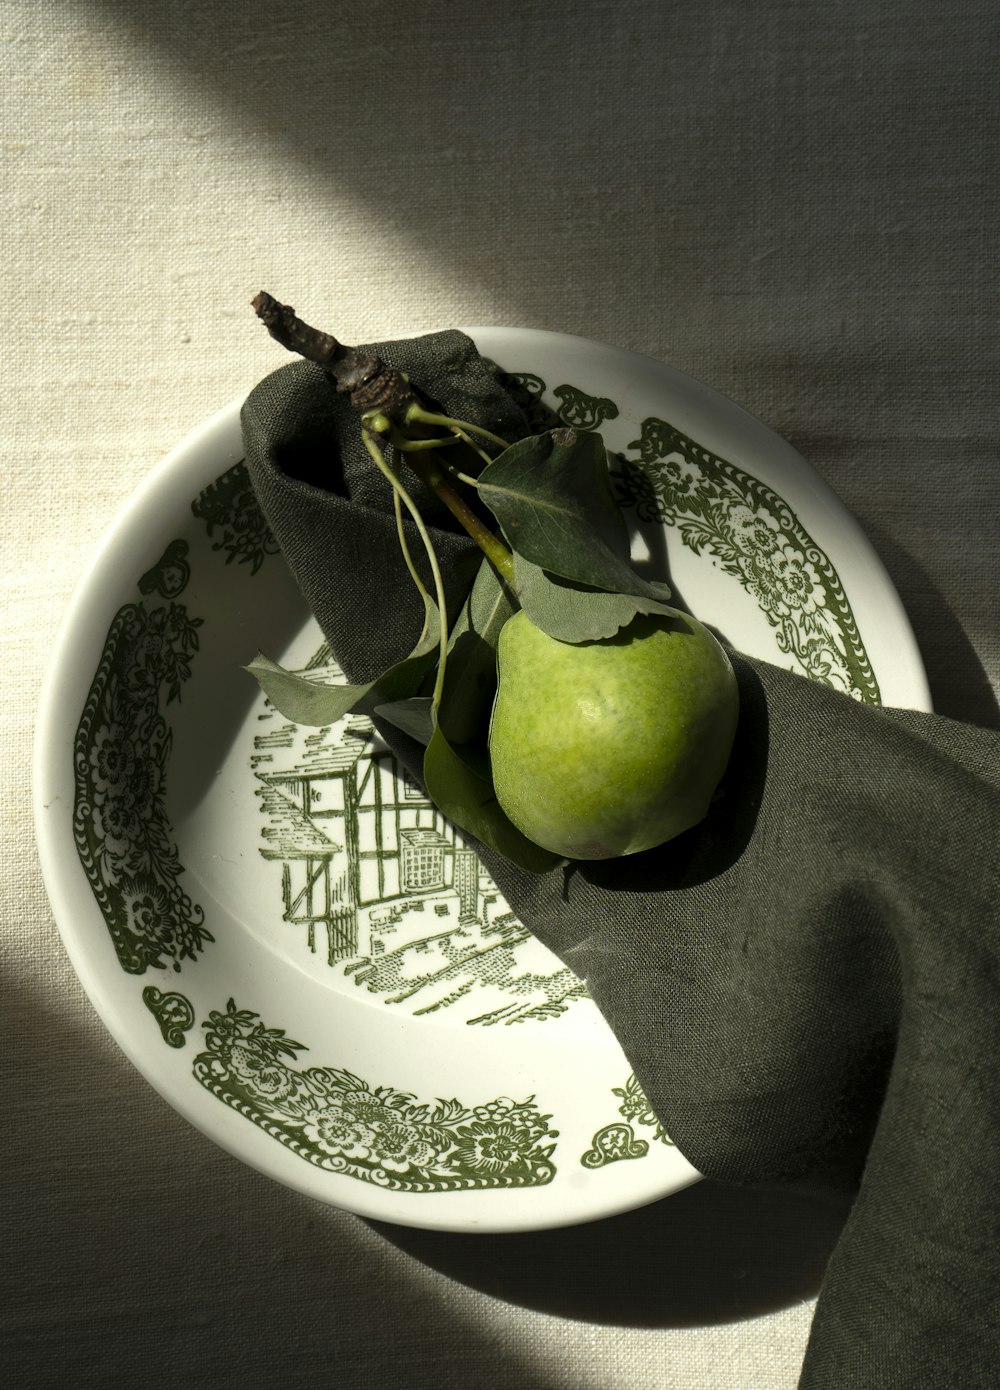 Ein grüner Apfel sitzt auf einem weißen Teller